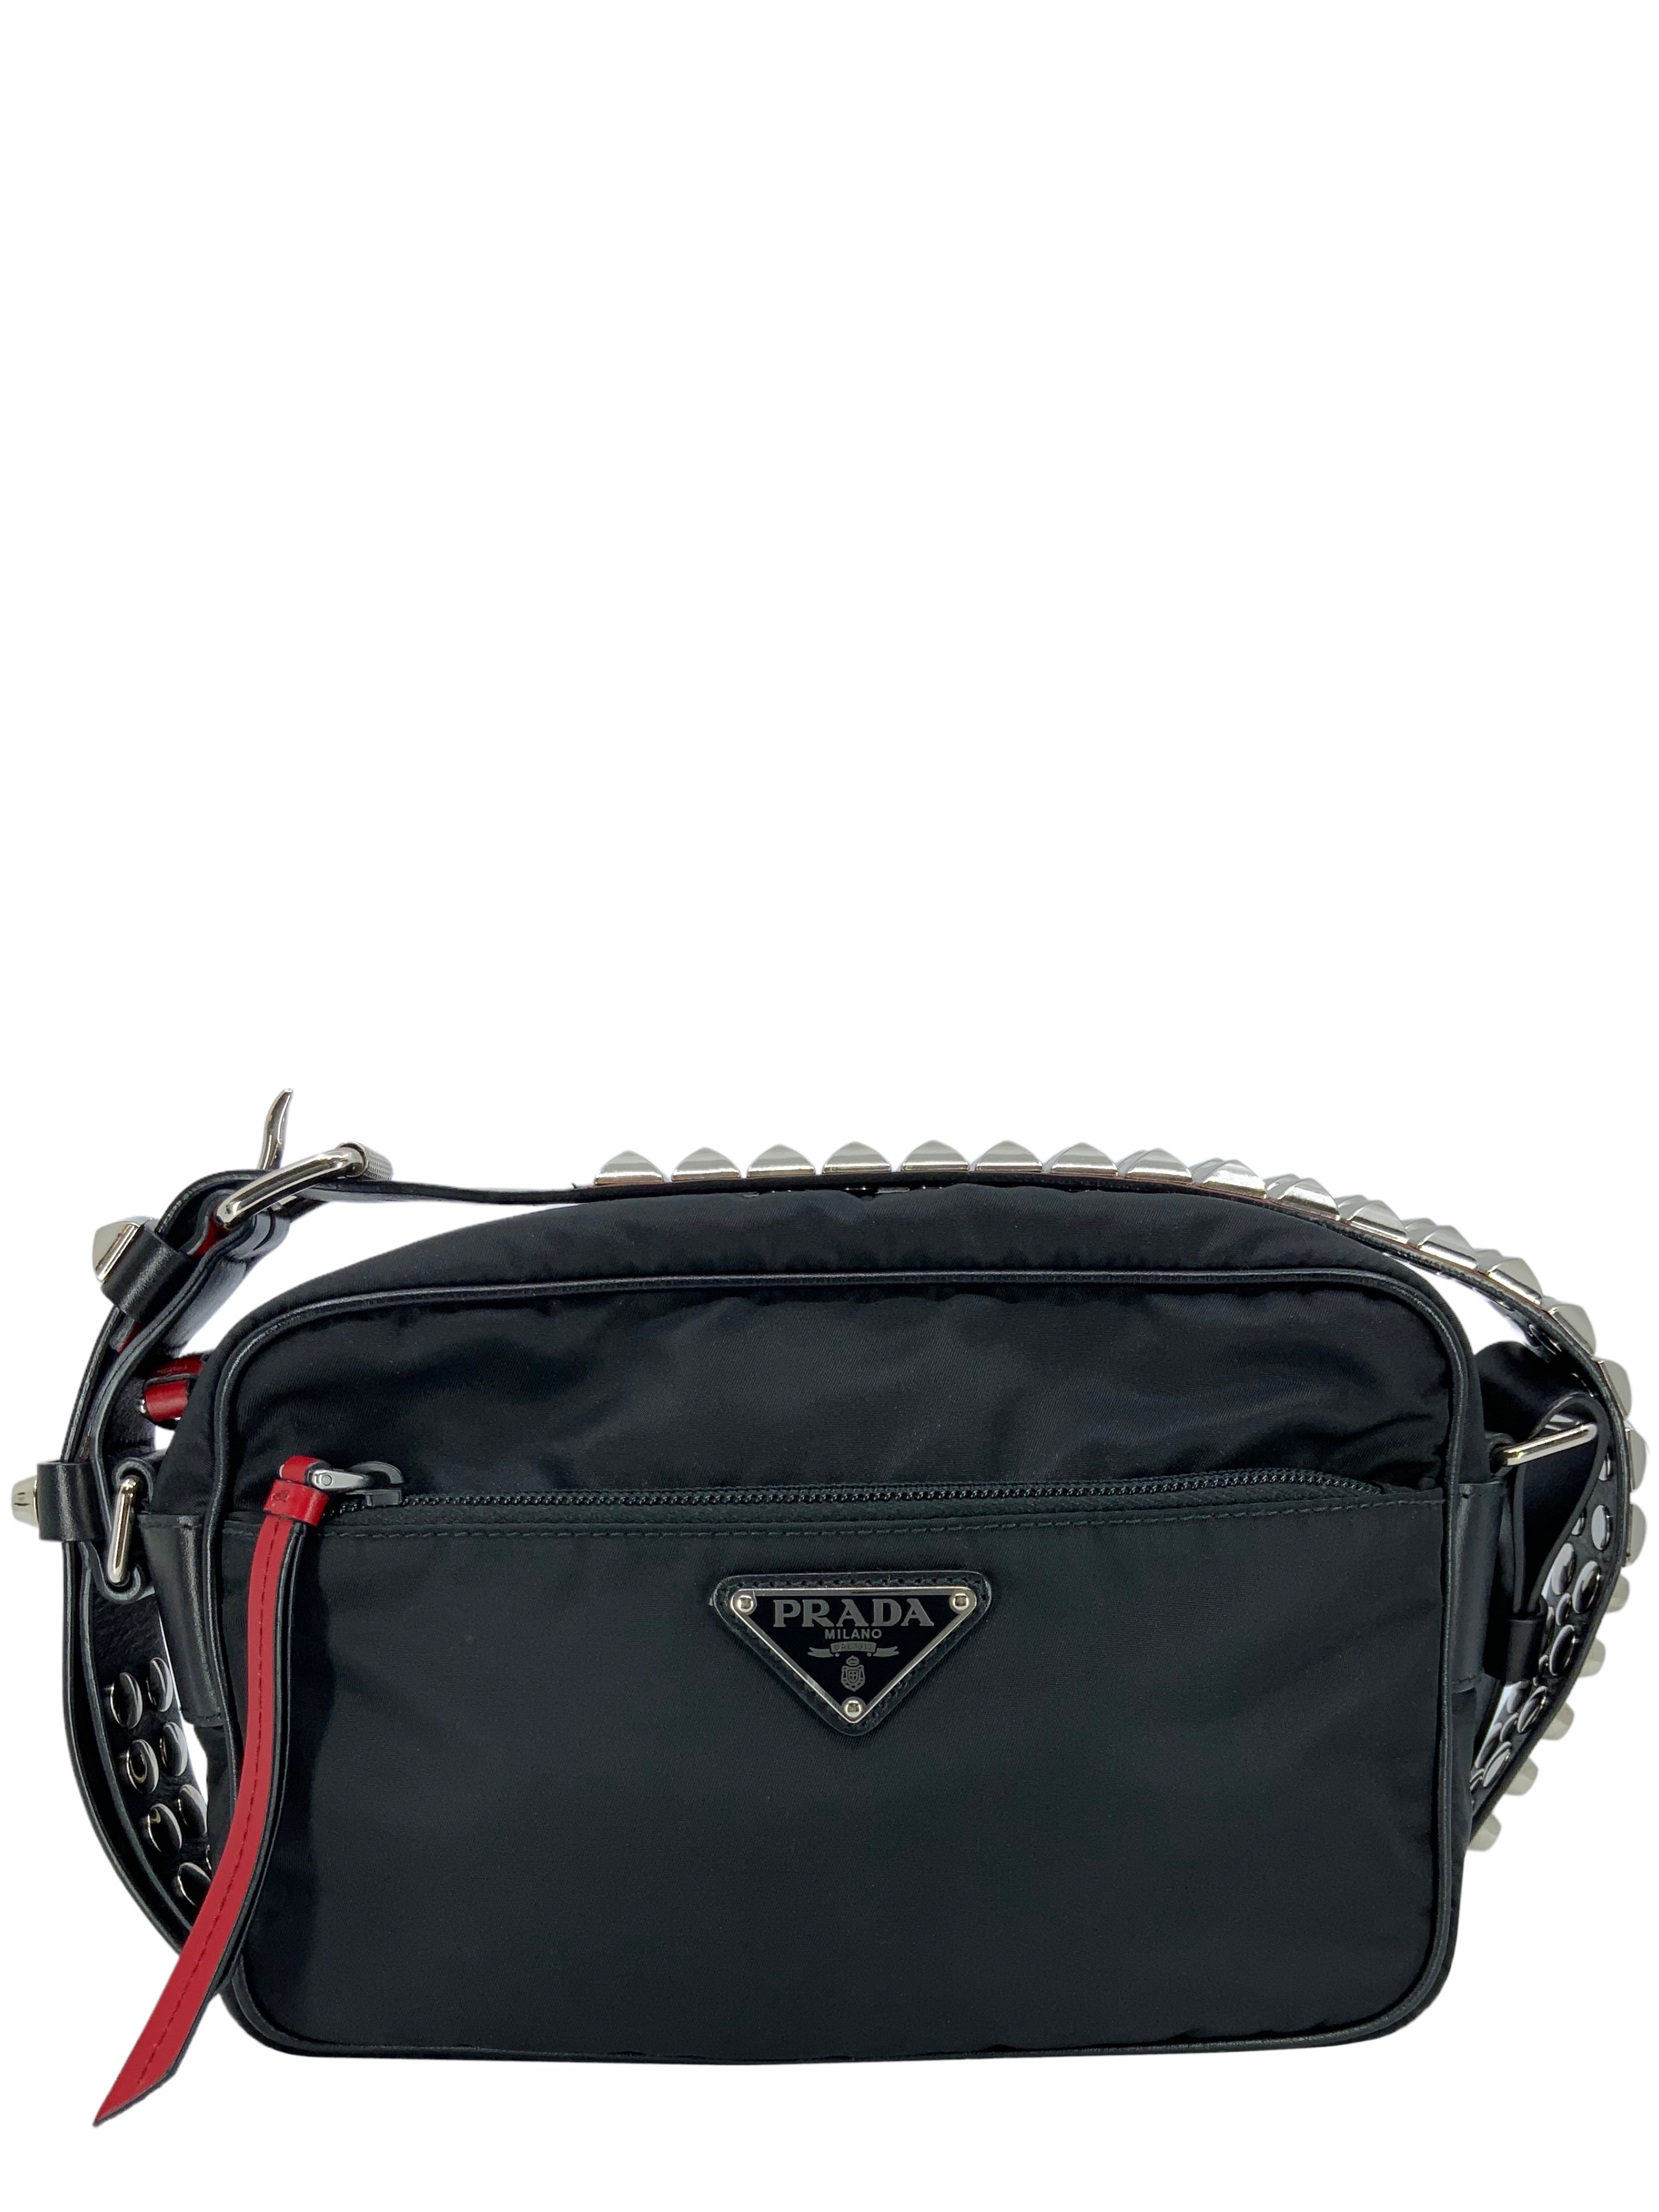 Prada Black/Blue Nylon and Leather New Vela Studded Messenger Bag